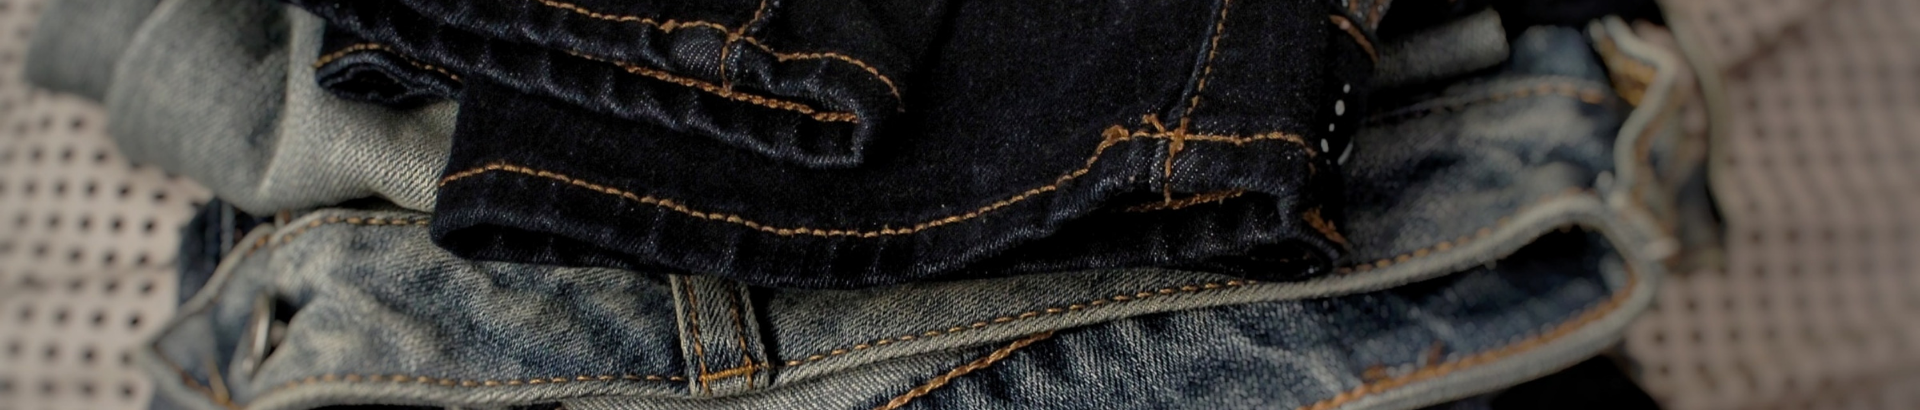 Gibt es für schwarze Jeans Spezielles zu beachten?